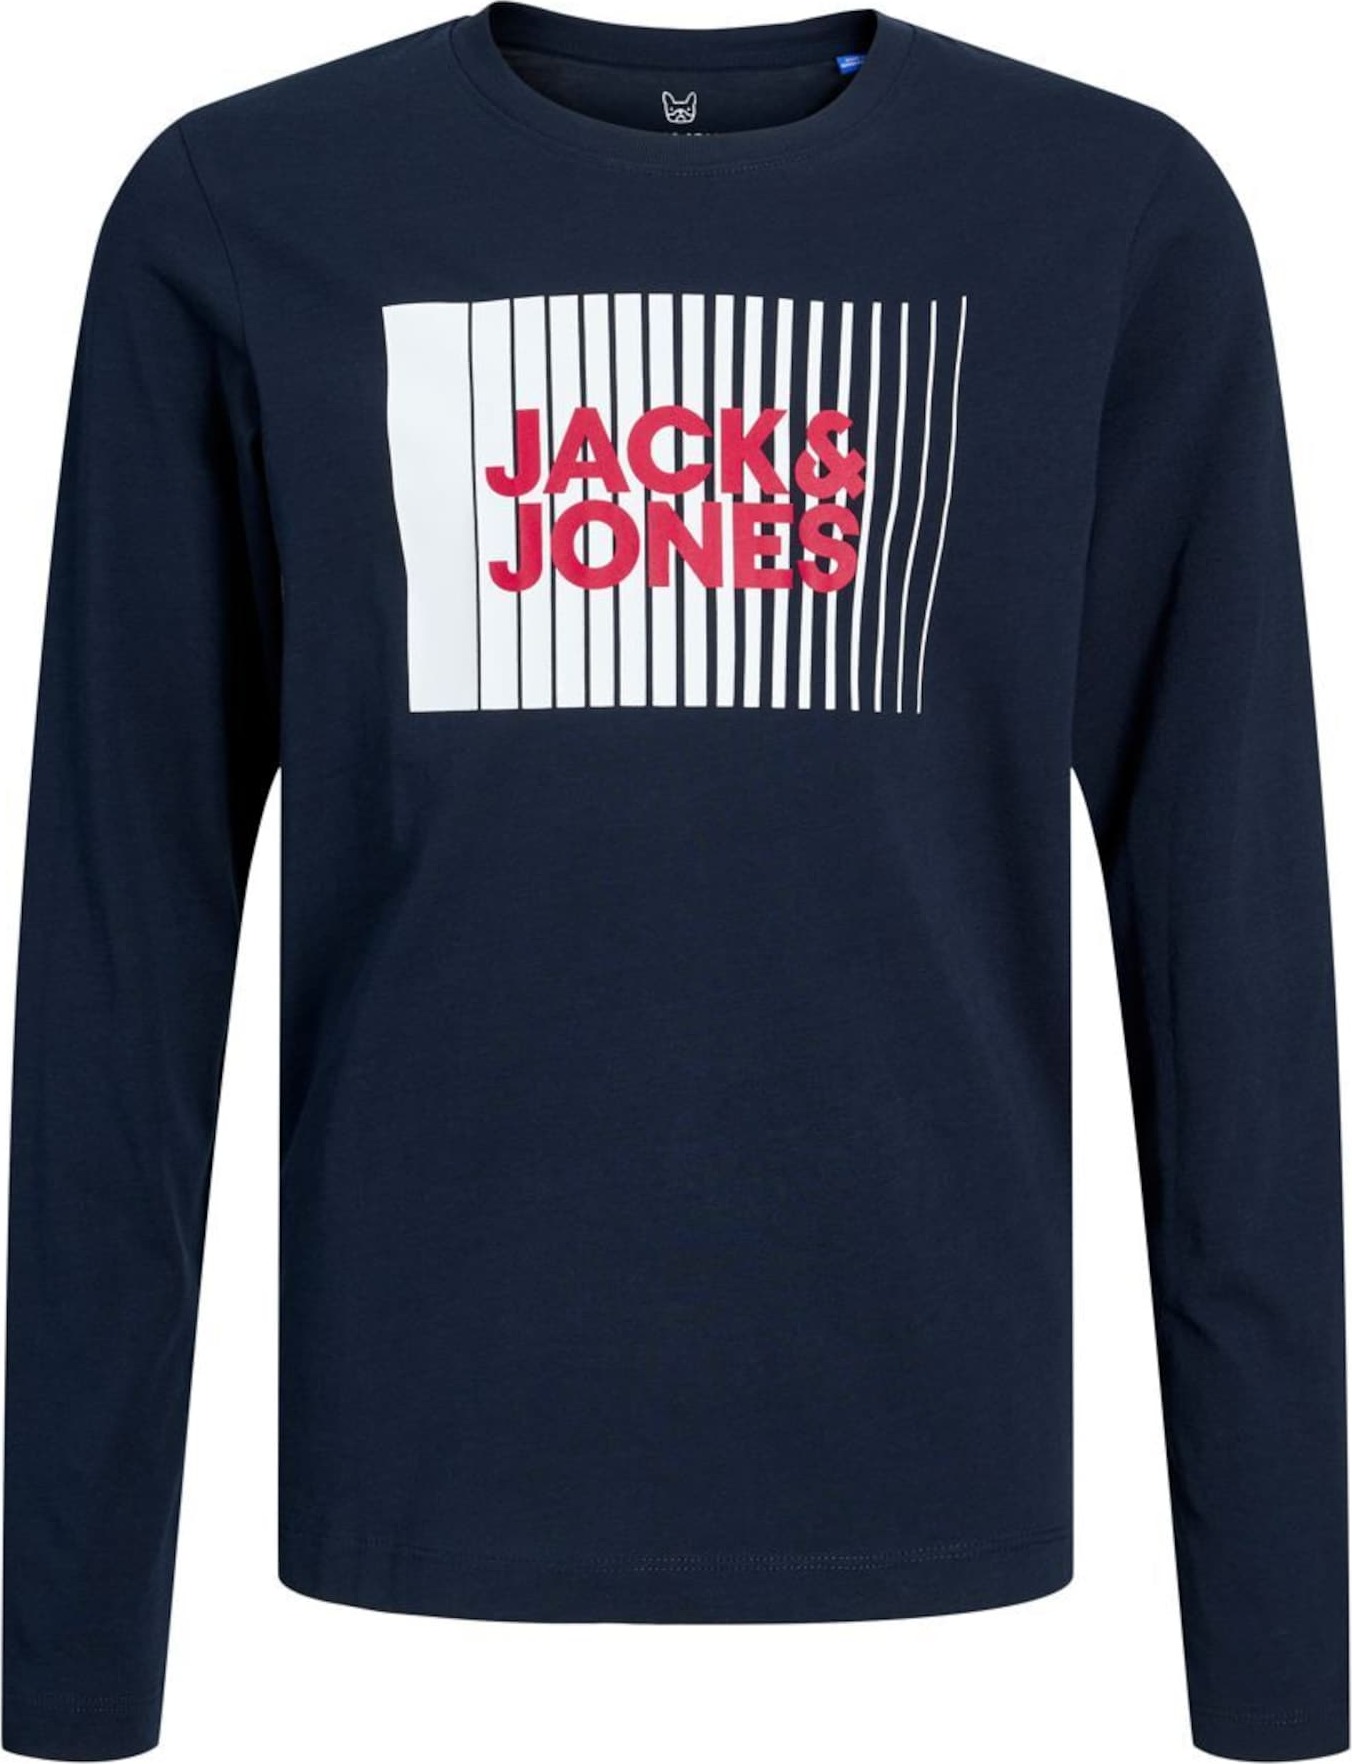 Tričko Jack & Jones Junior modrá / červená / bílá